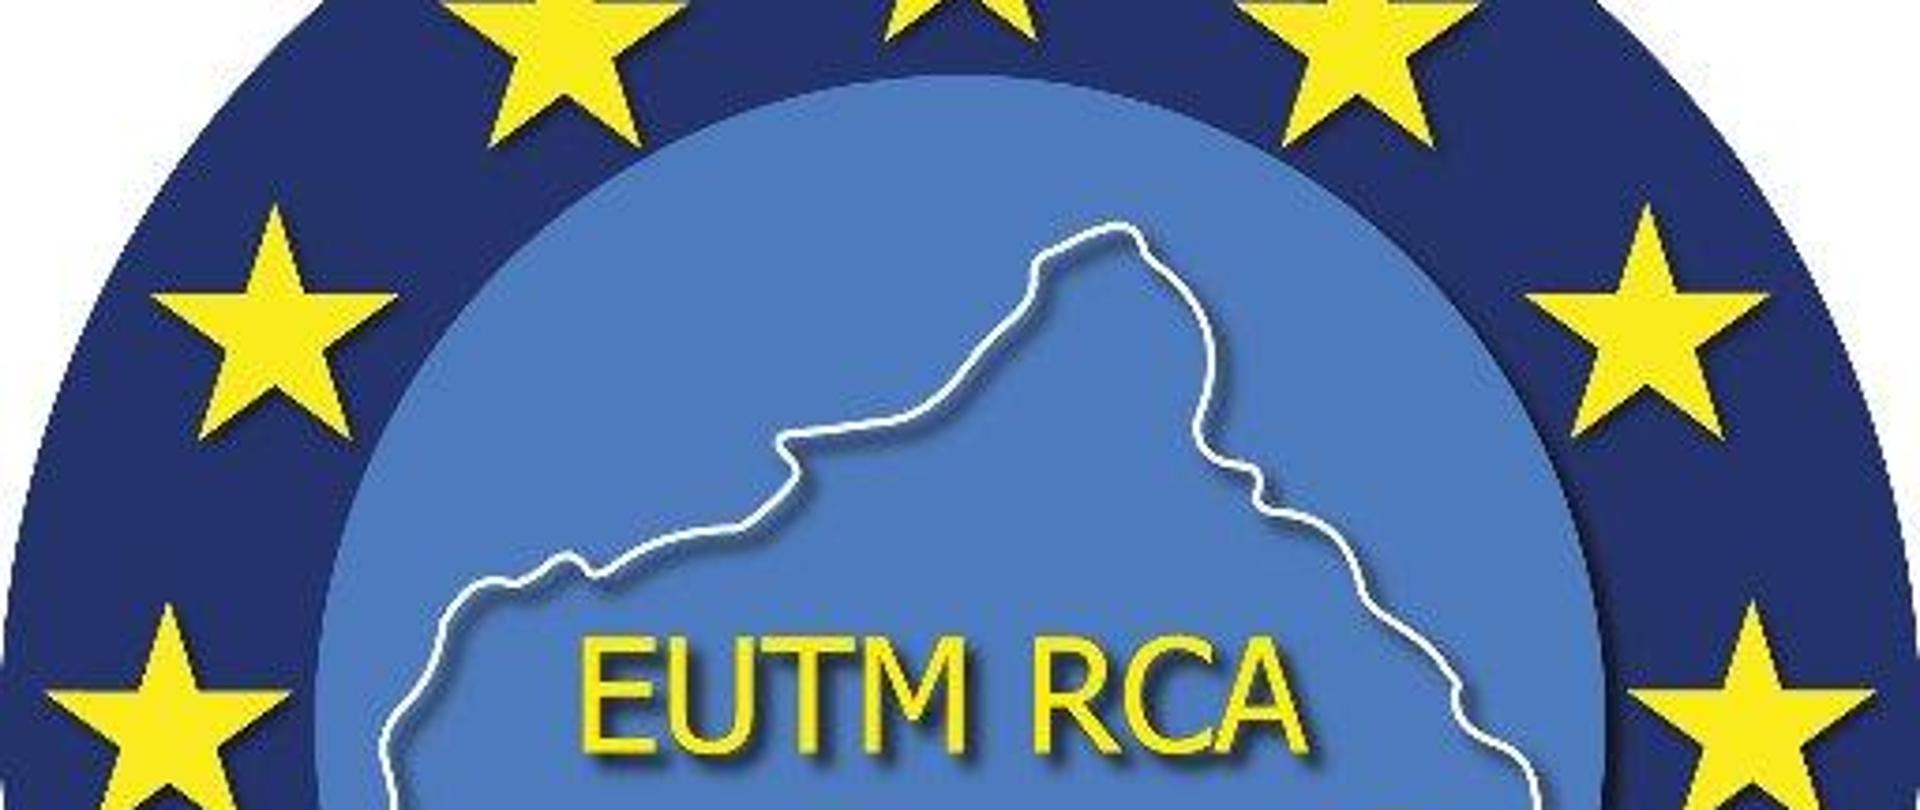 EUTM RCA